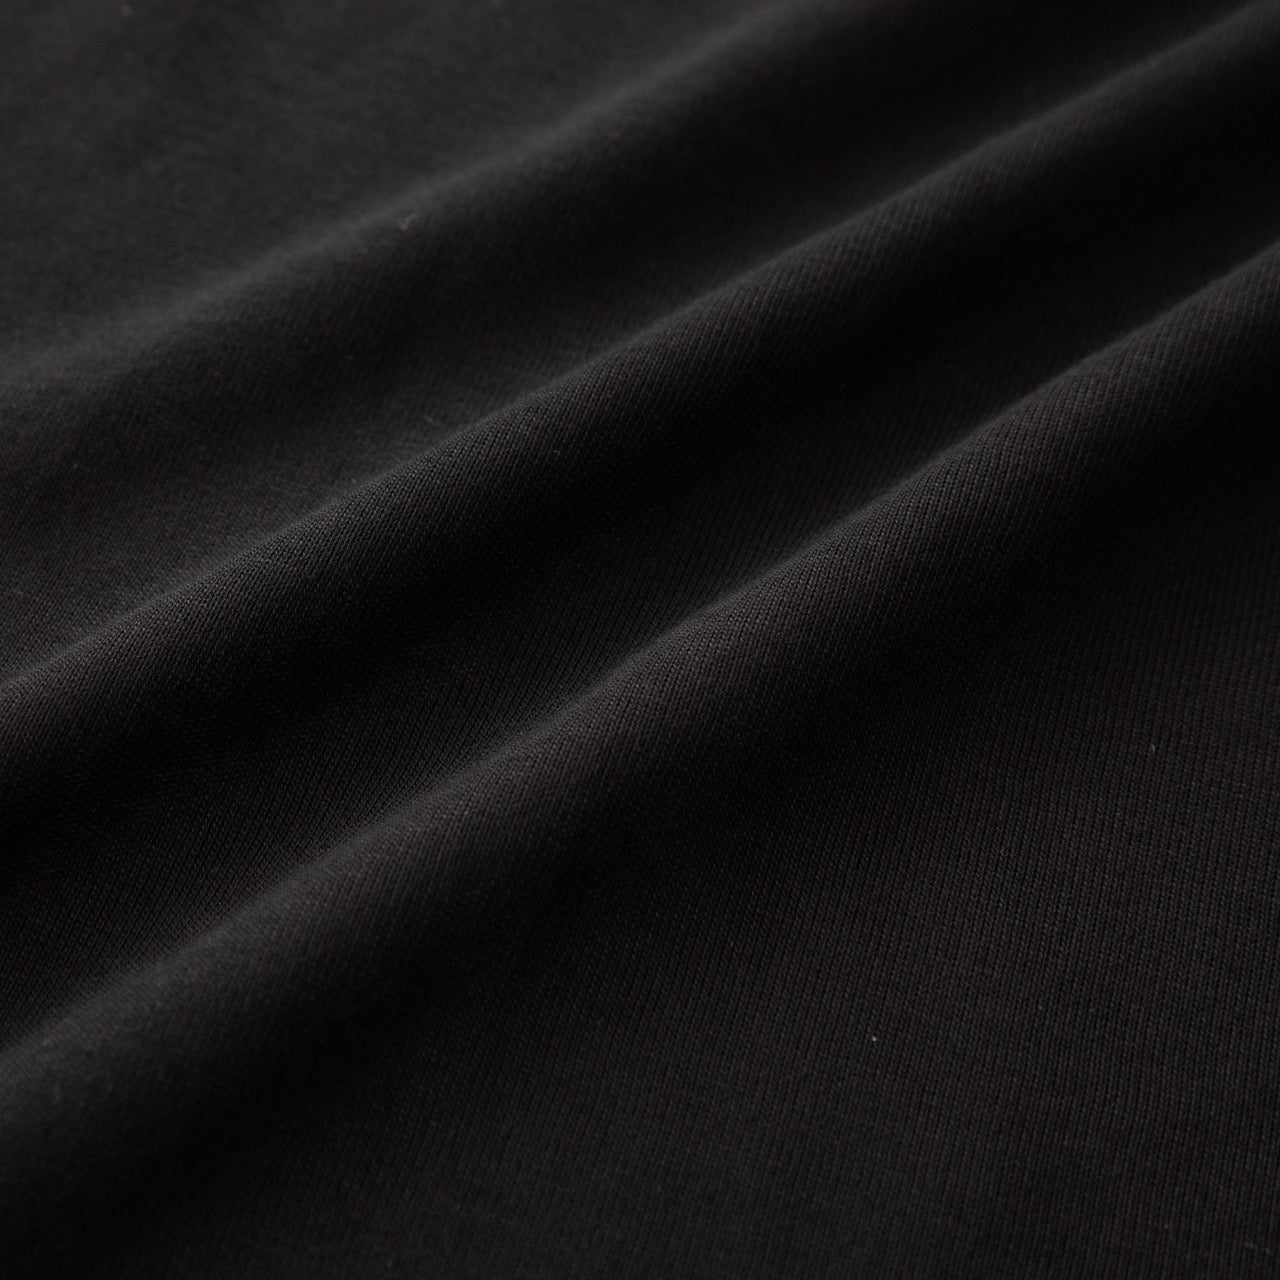 
                  
                    浴衣ルームウェア・プレミアム-ブラック- Yukata Roomwear Premium-Black-
                  
                